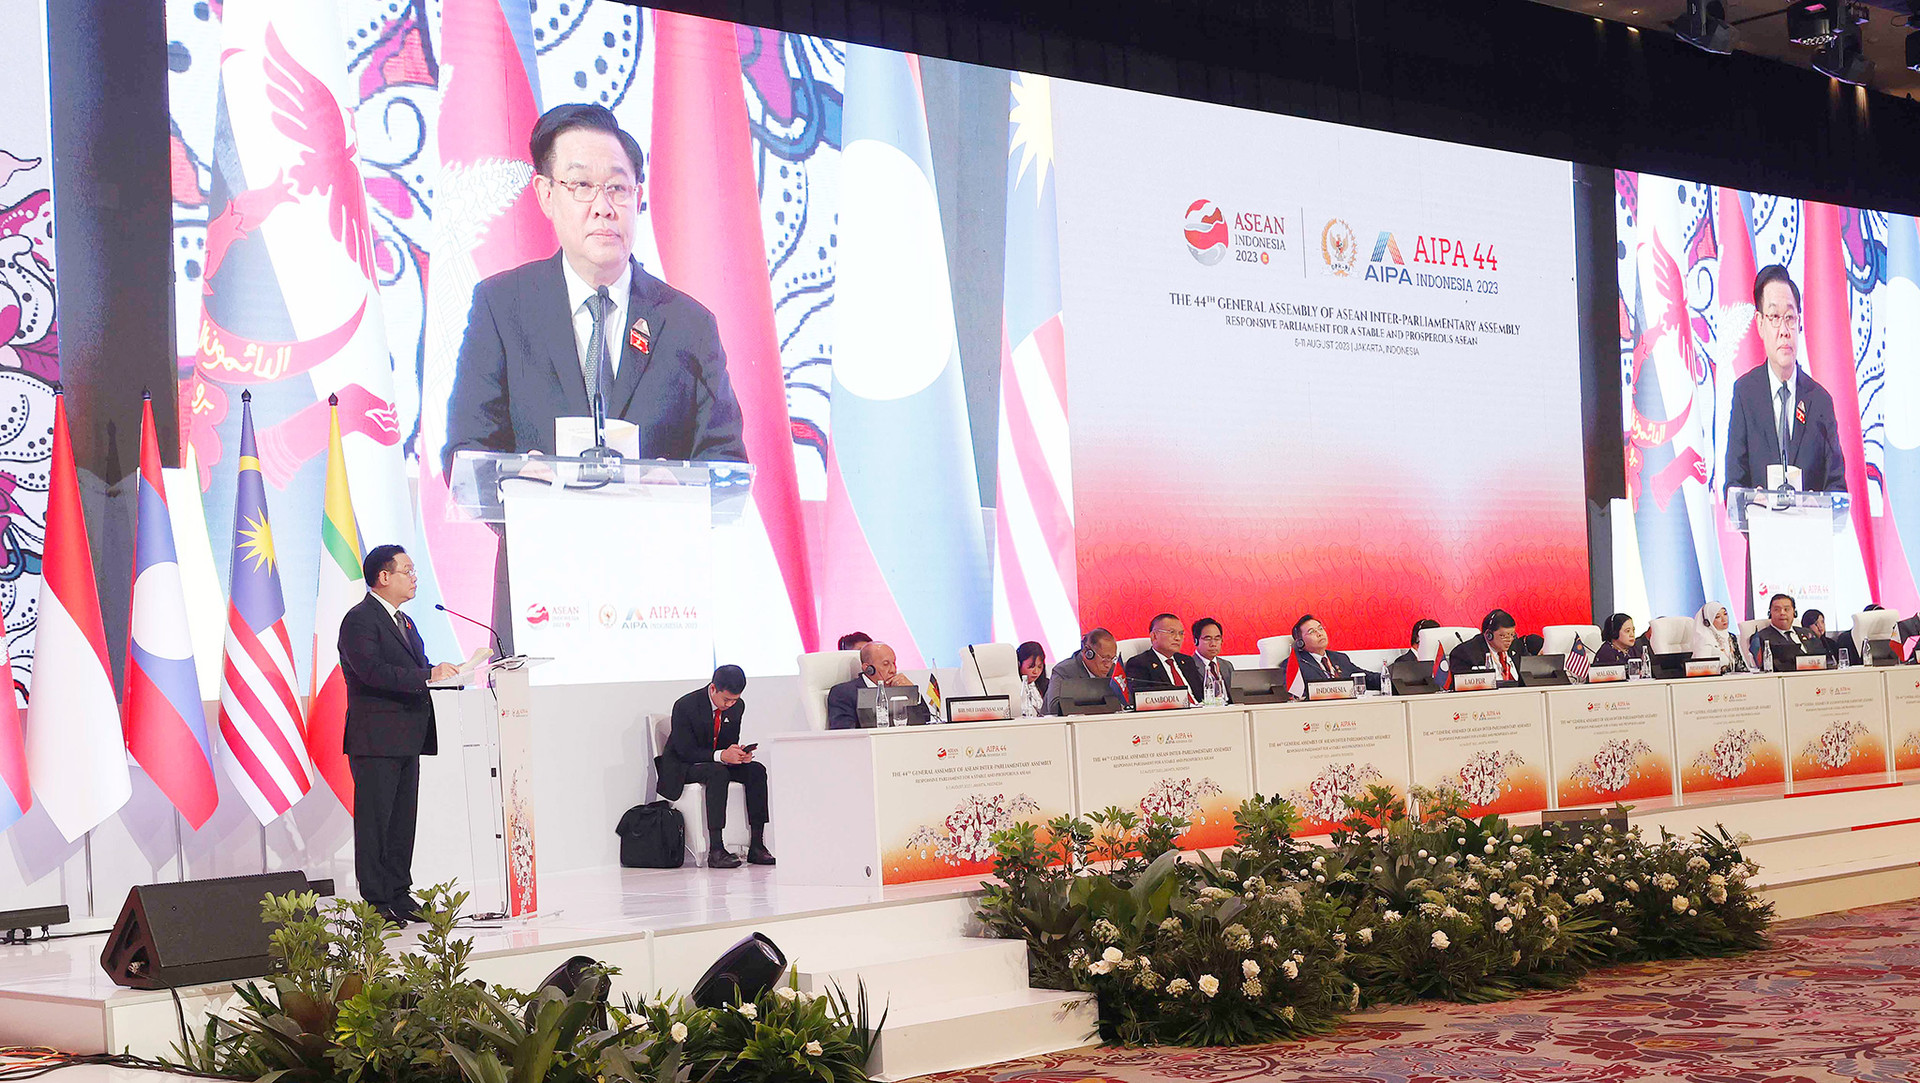 Chủ tịch Quốc hội Vương Đình Huệ: Qua “bão giông” càng sáng lên một ASEAN tự cường, chủ động thích ứng, đoàn kết, thống nhất -1